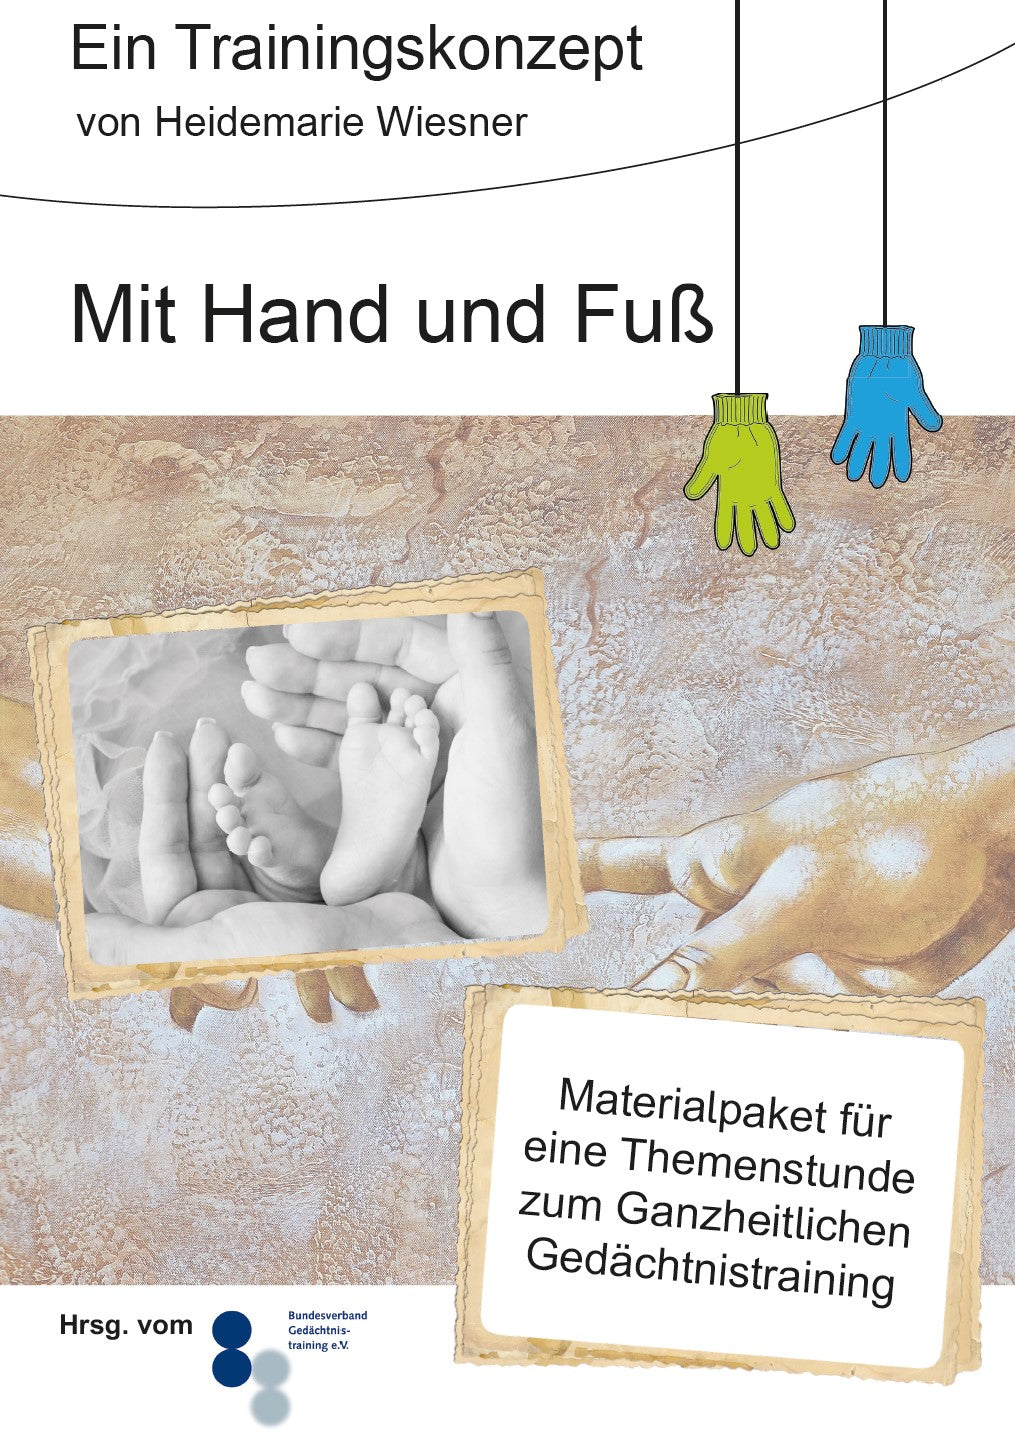 Trainingskonzept "Mit Hand und Fuß" (PDF)